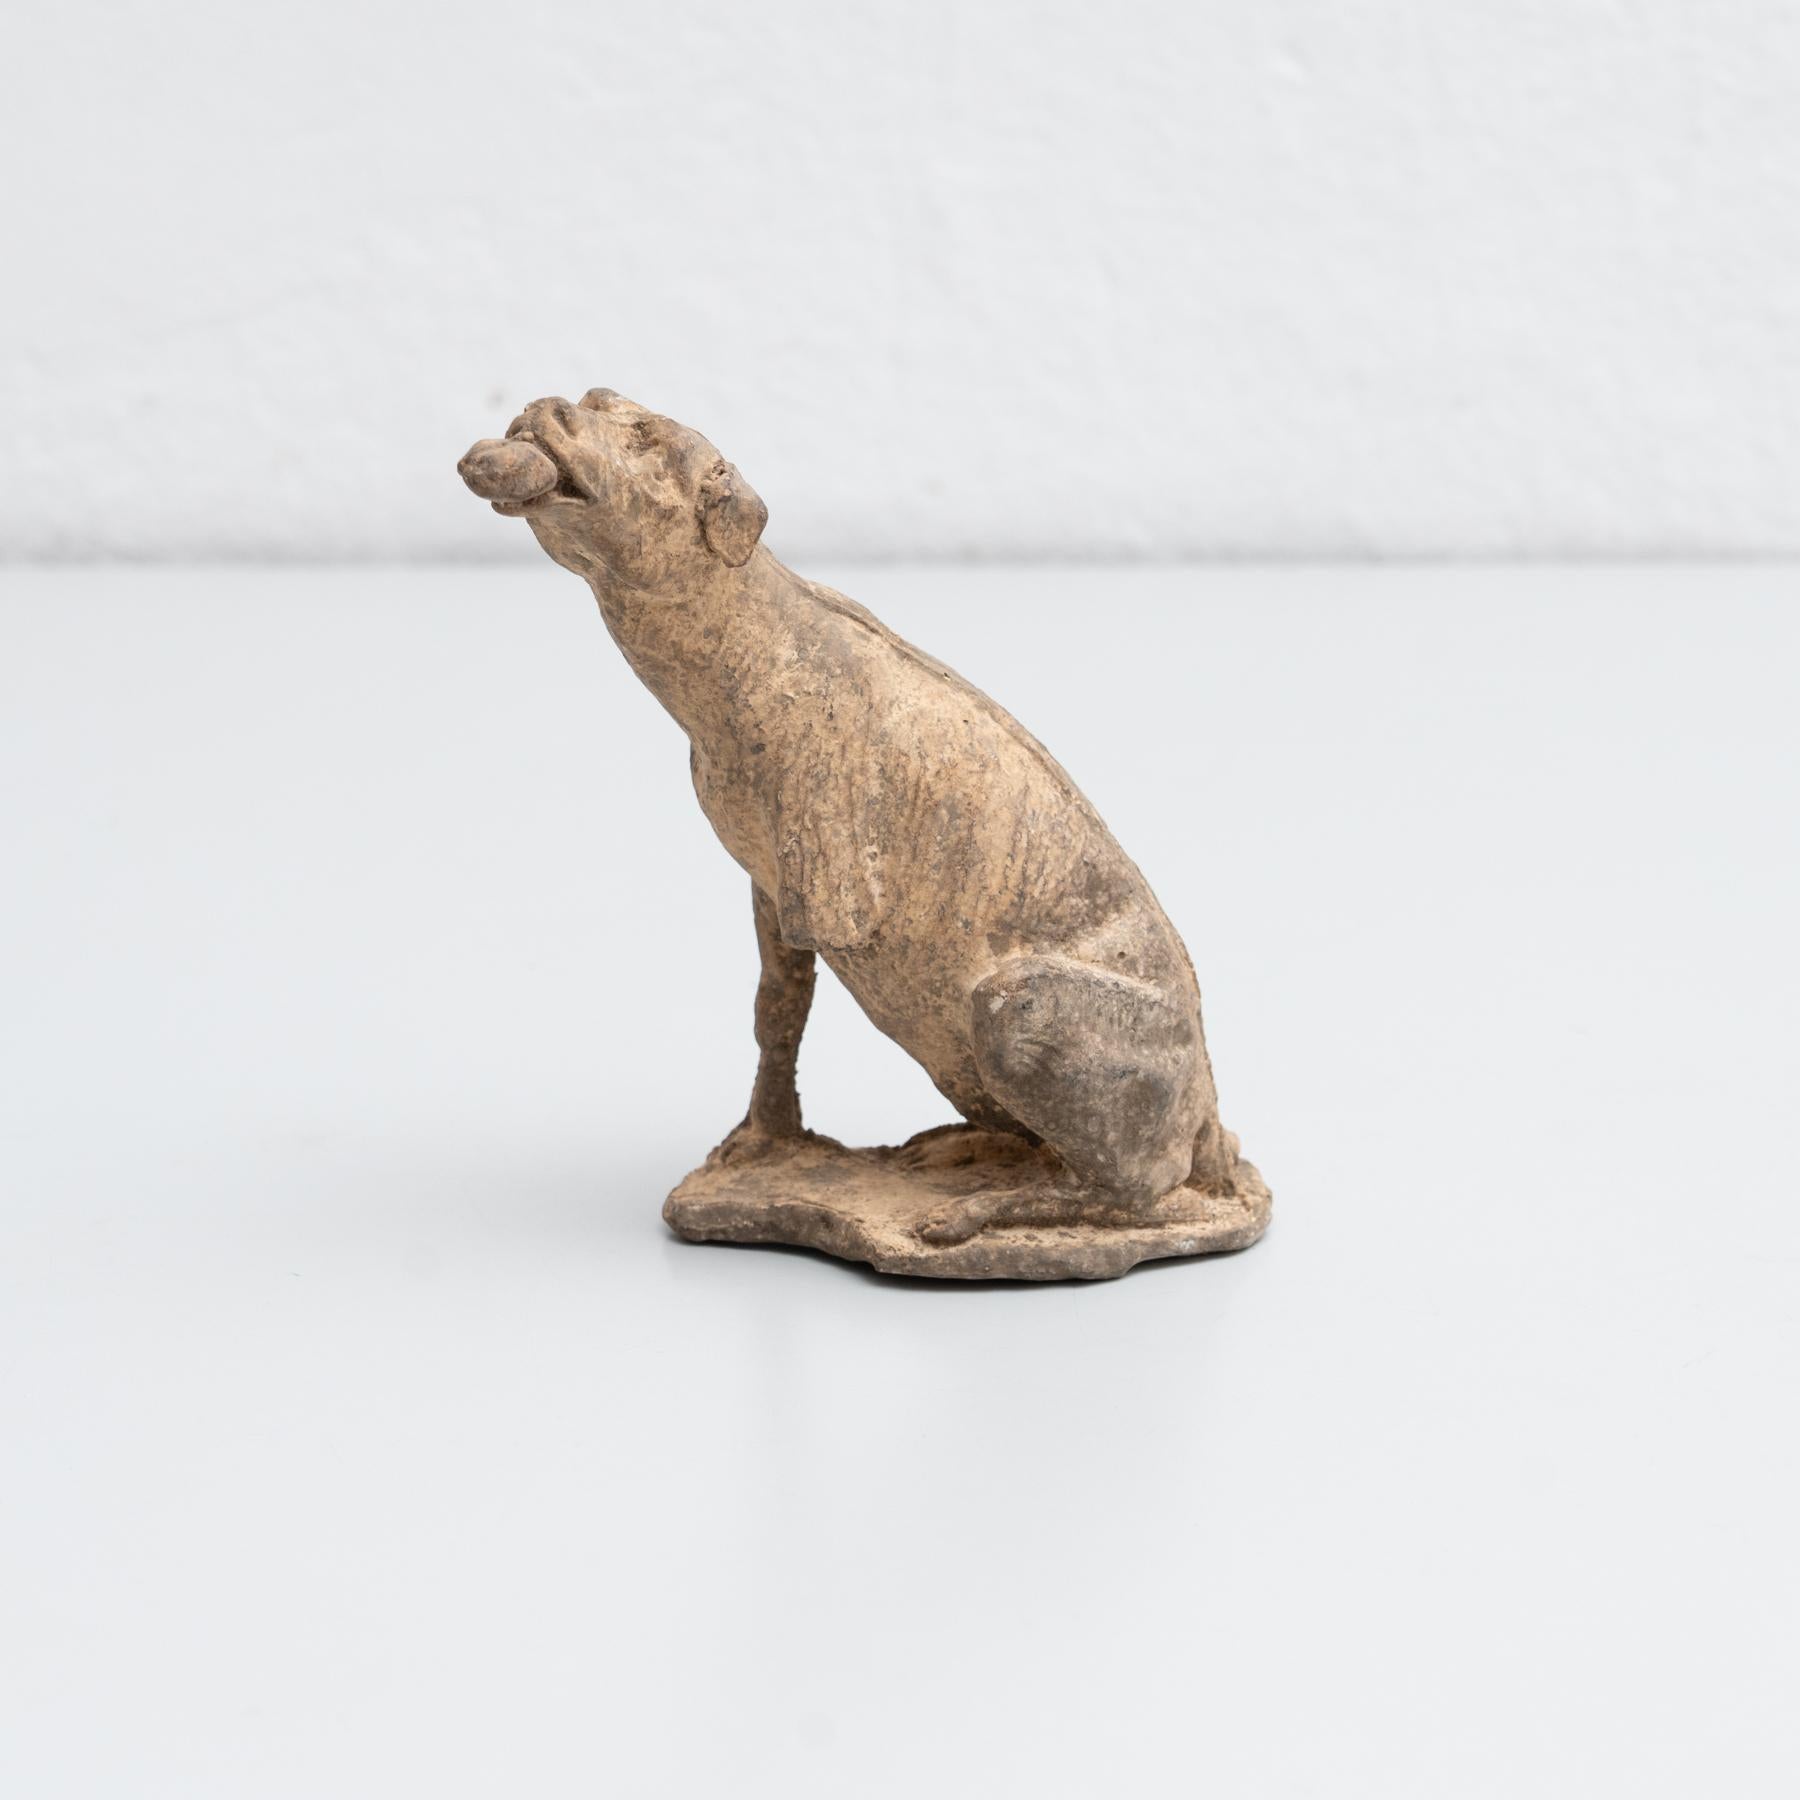 Figure traditionnelle en plâtre d'un chien.

Fabriqué dans un atelier catalan traditionnel à Olot, en Espagne, vers 1950.

En état d'origine, avec une usure mineure conforme à l'âge et à l'utilisation, préservant une belle patine.

Olot a une